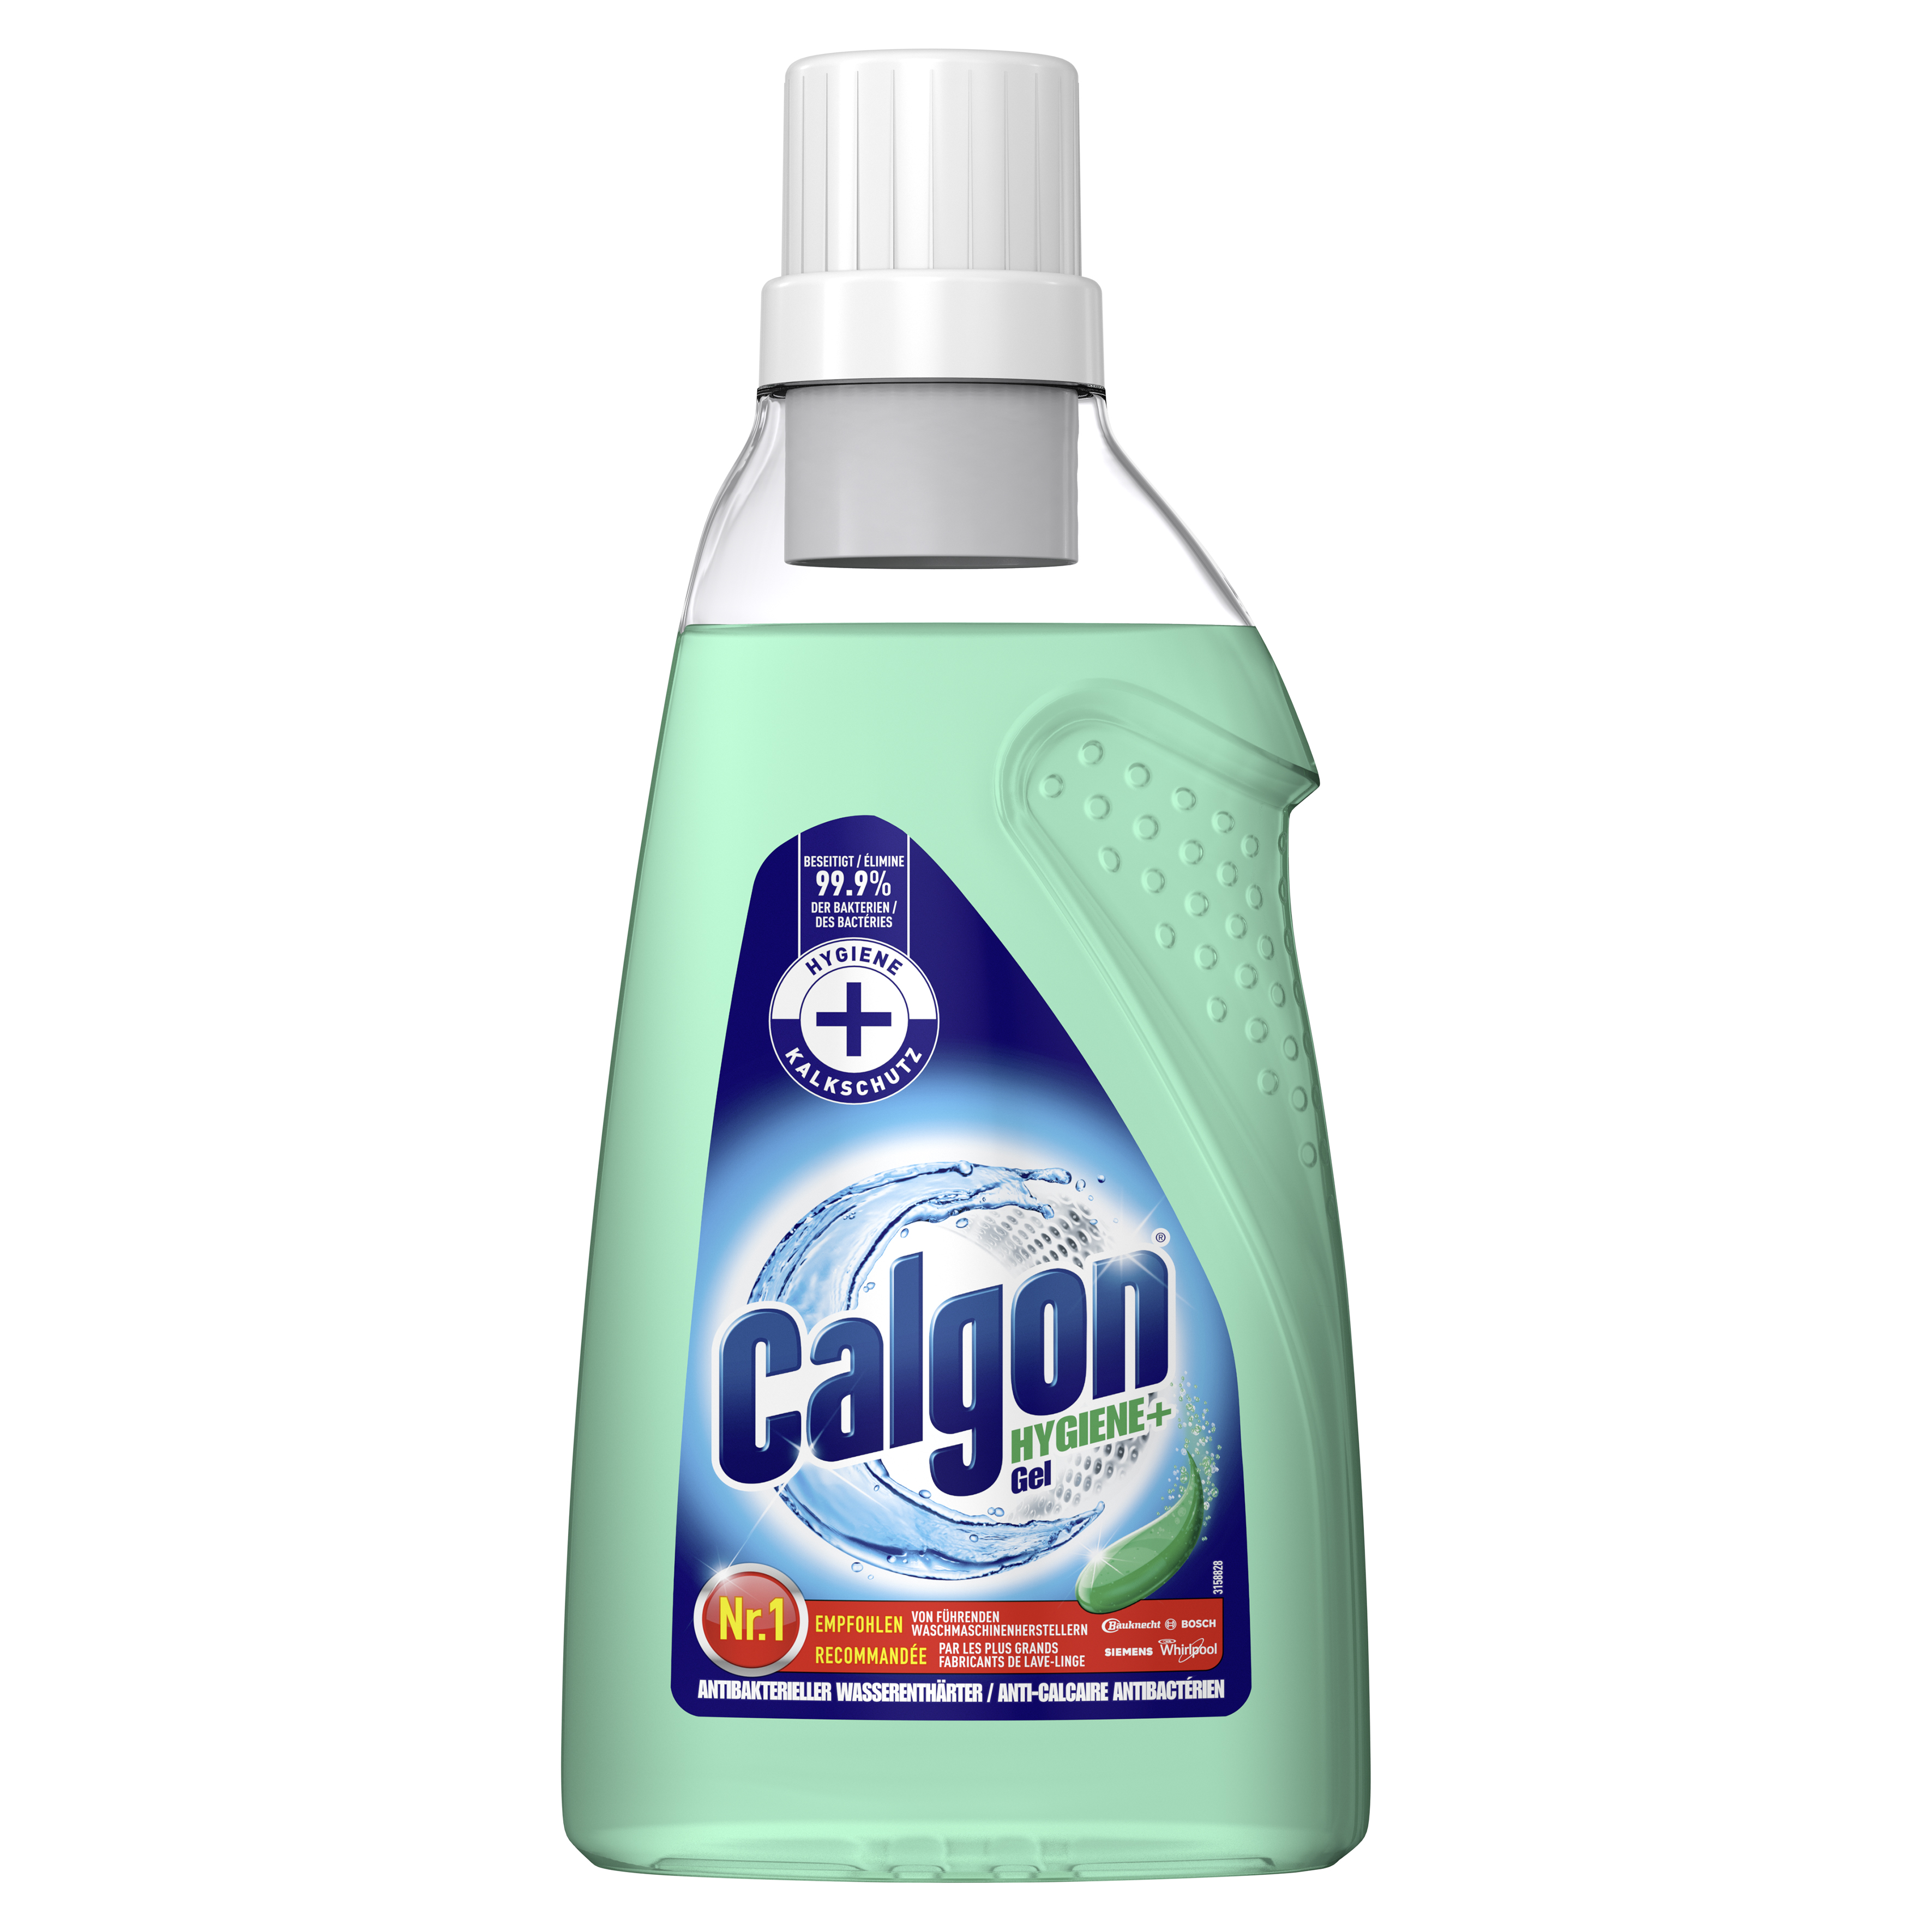 Calgon Hygiene+ Gel 750ml